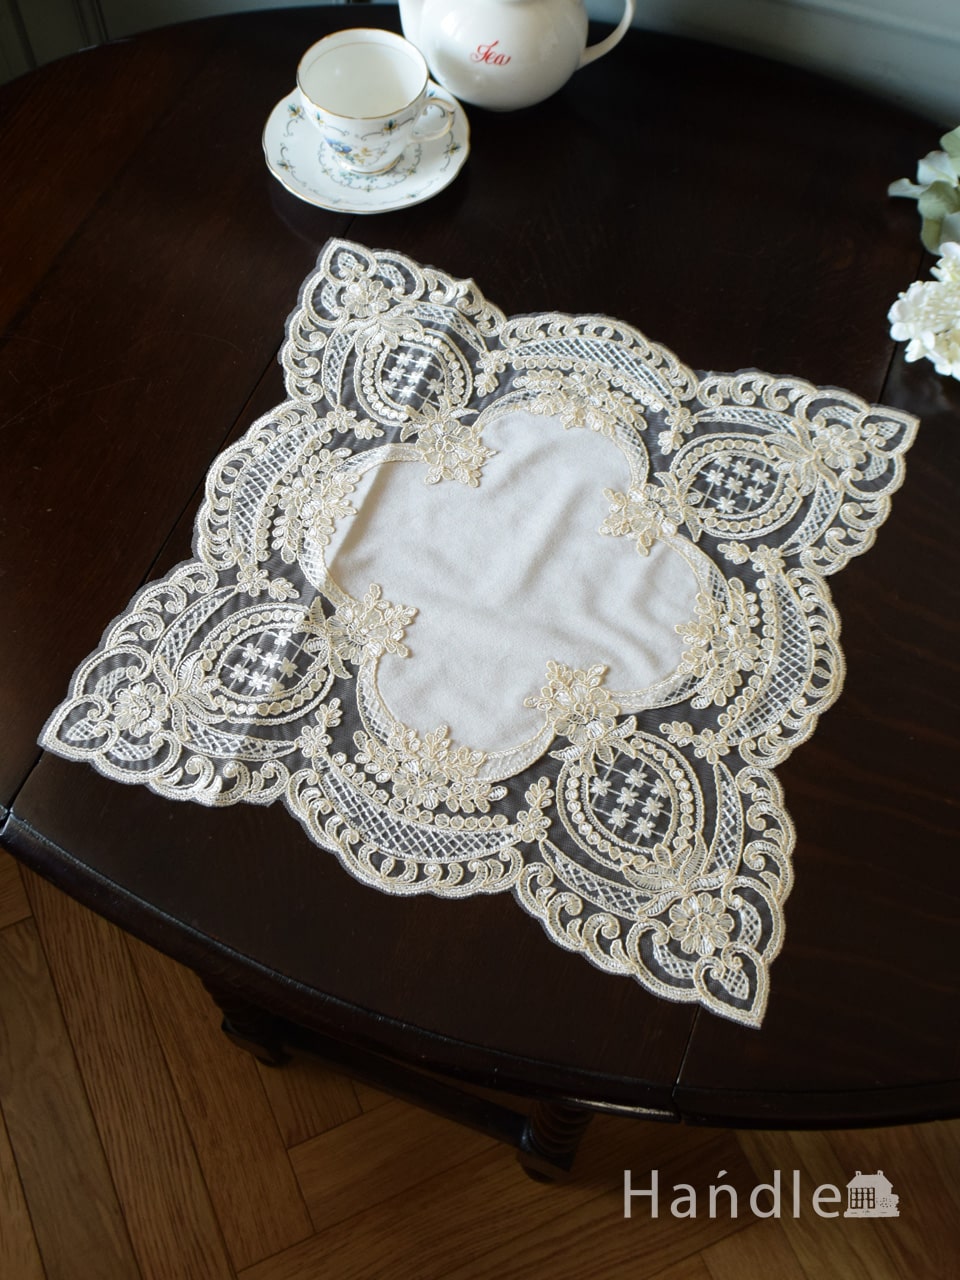 フレンチアンティーク風の美しいテーブルレース、華やかな刺繍の入ったドイリー40×40cm (n20-216)